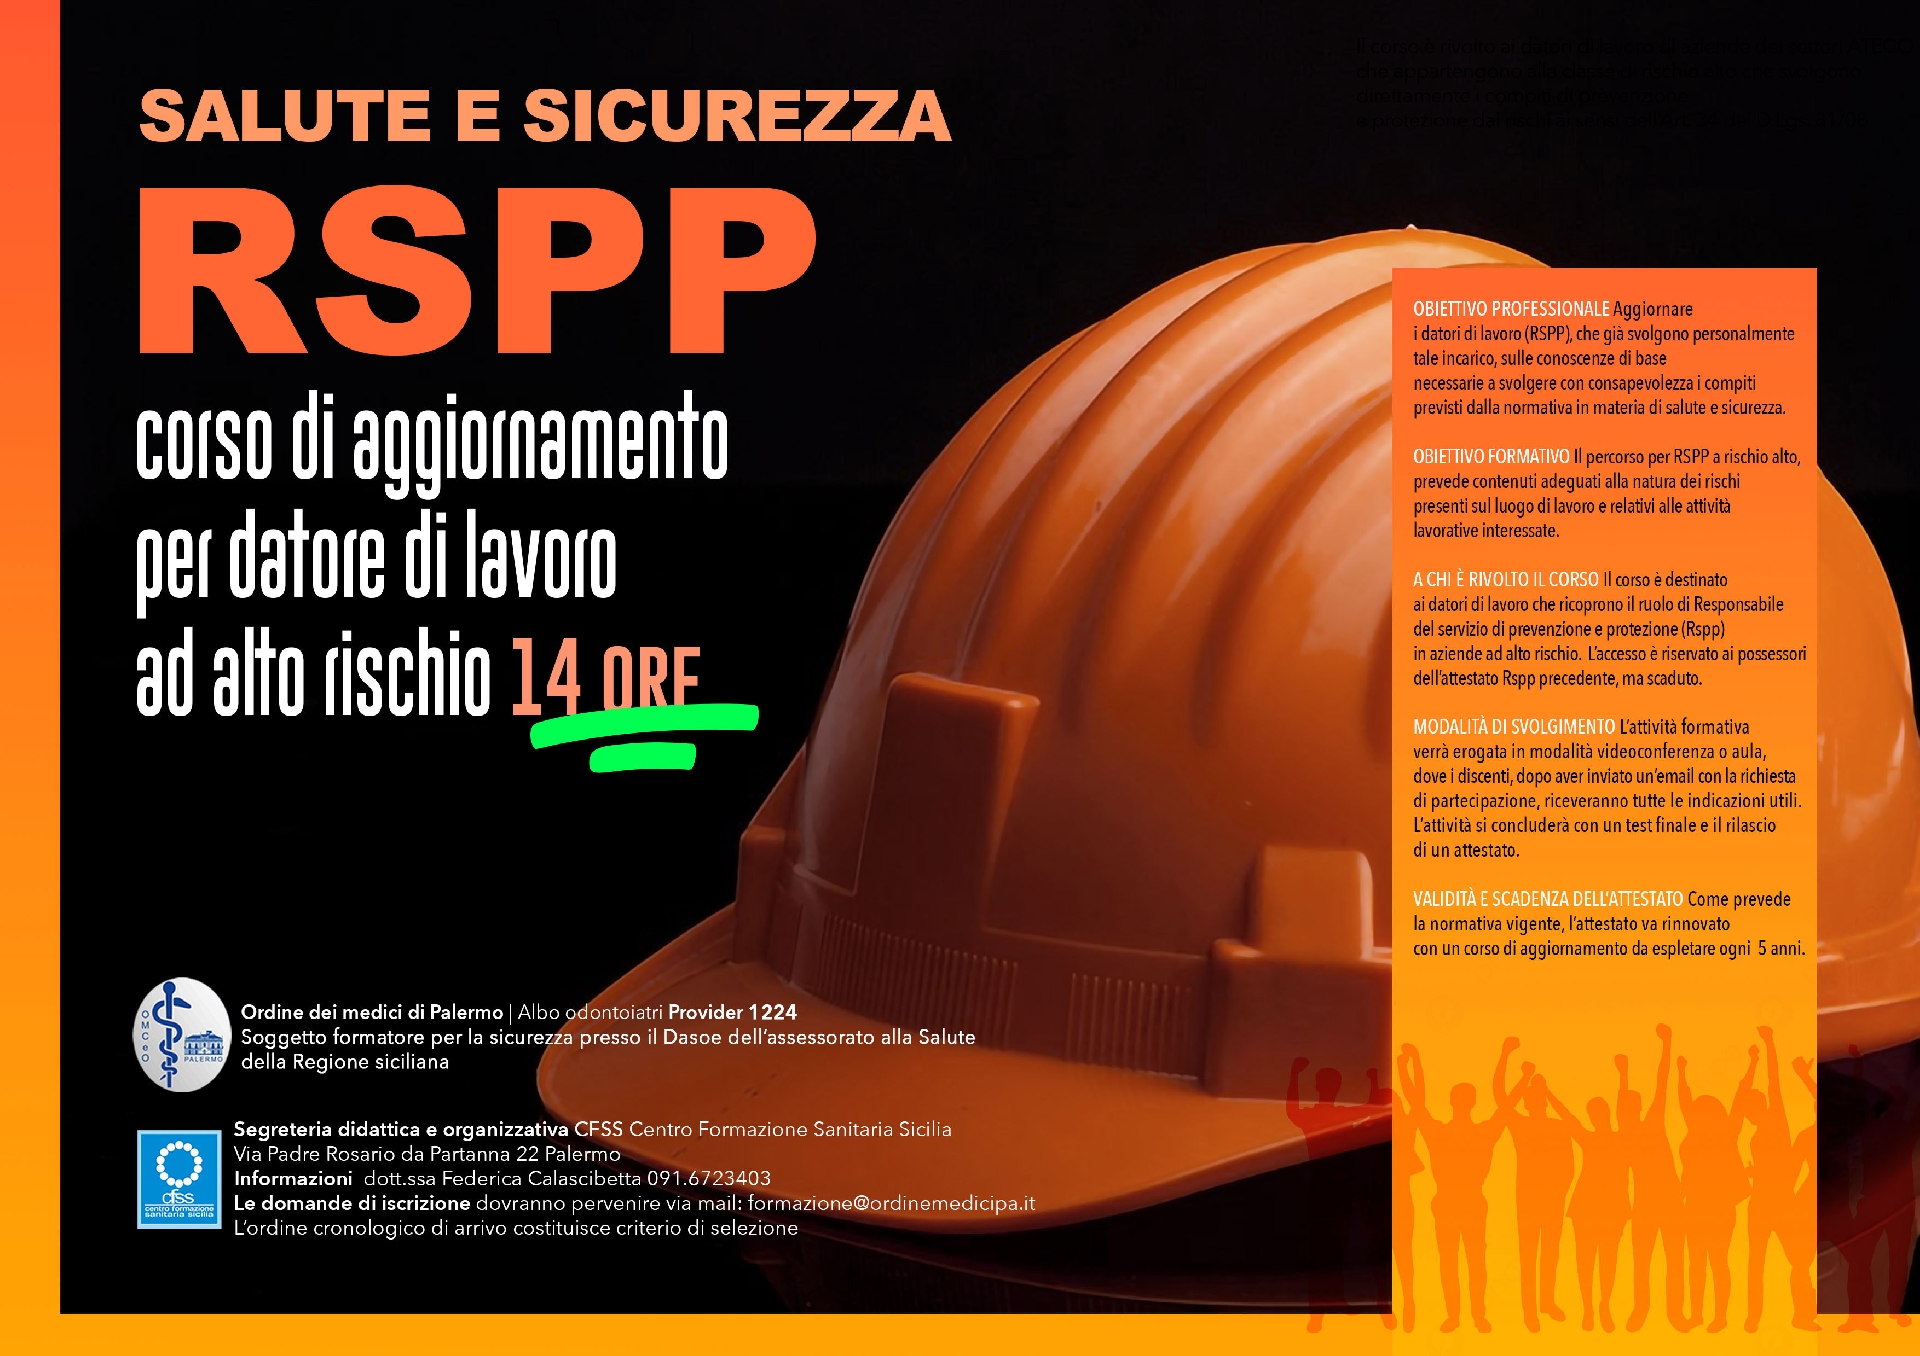 SALUTE E SICUREZZA - RSPP - corso di aggiornamento per datore di lavoro ad alto rischio 14 ORE 